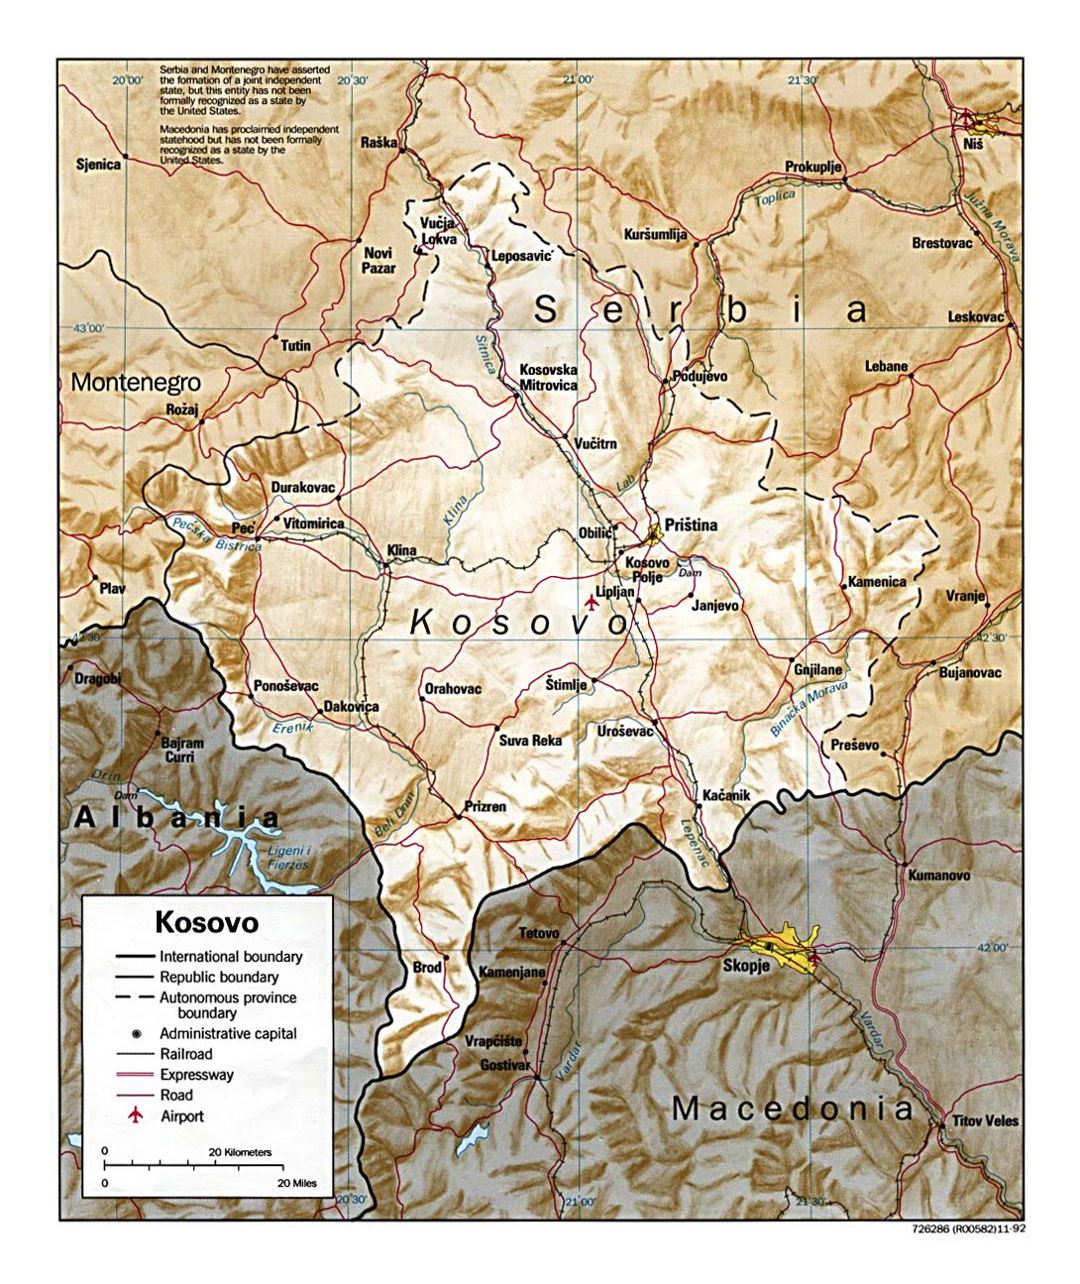 Детальная политическая карта Косово с рельефом, дорогами, железными дорогами, городами и аэропортами - 1999